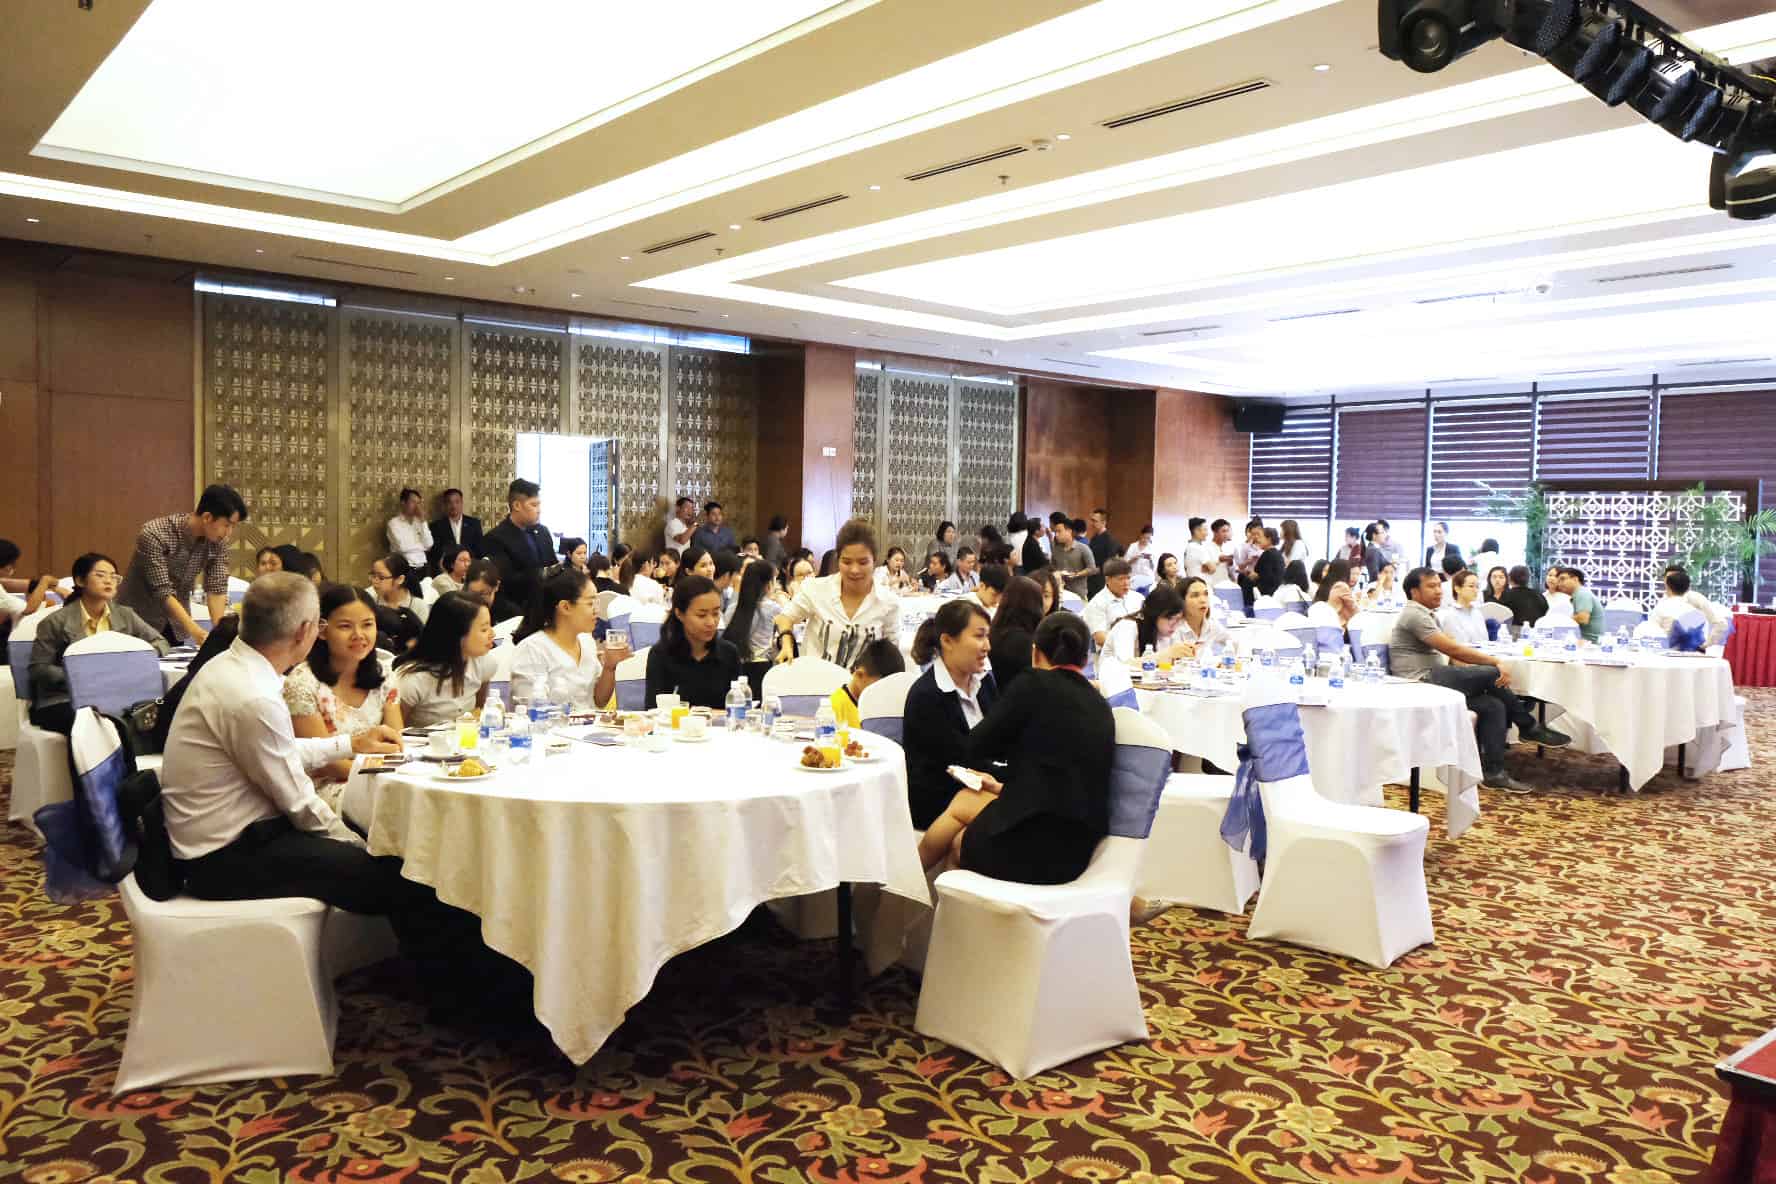 Hội thảo: "Kinh doanh khách sạn tại Nha Trang - Đa dạng hóa nguồn khách theo xu hướng công nghệ mới"